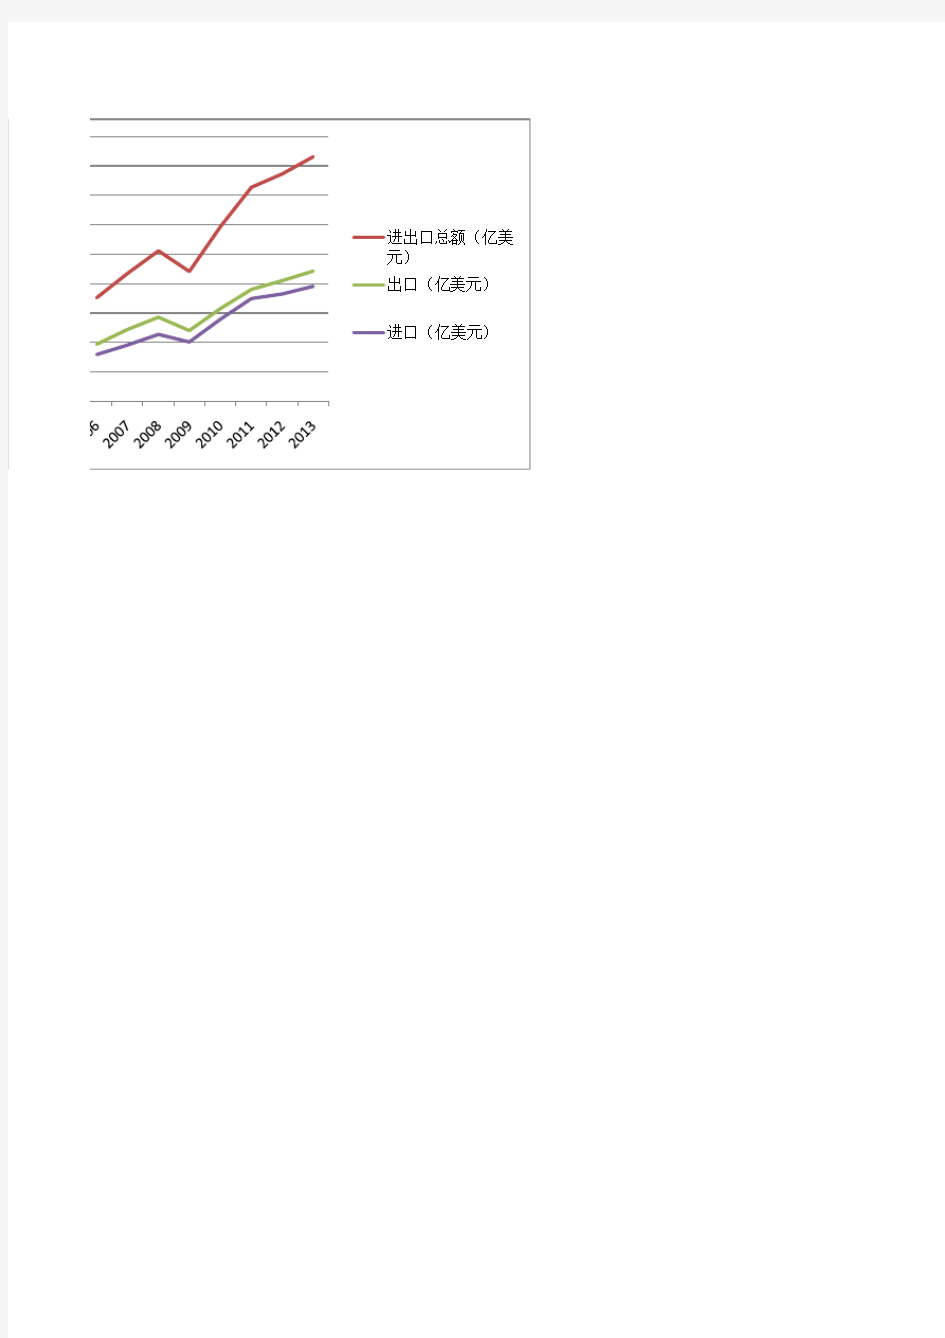 2010-2013年中国进出口总额